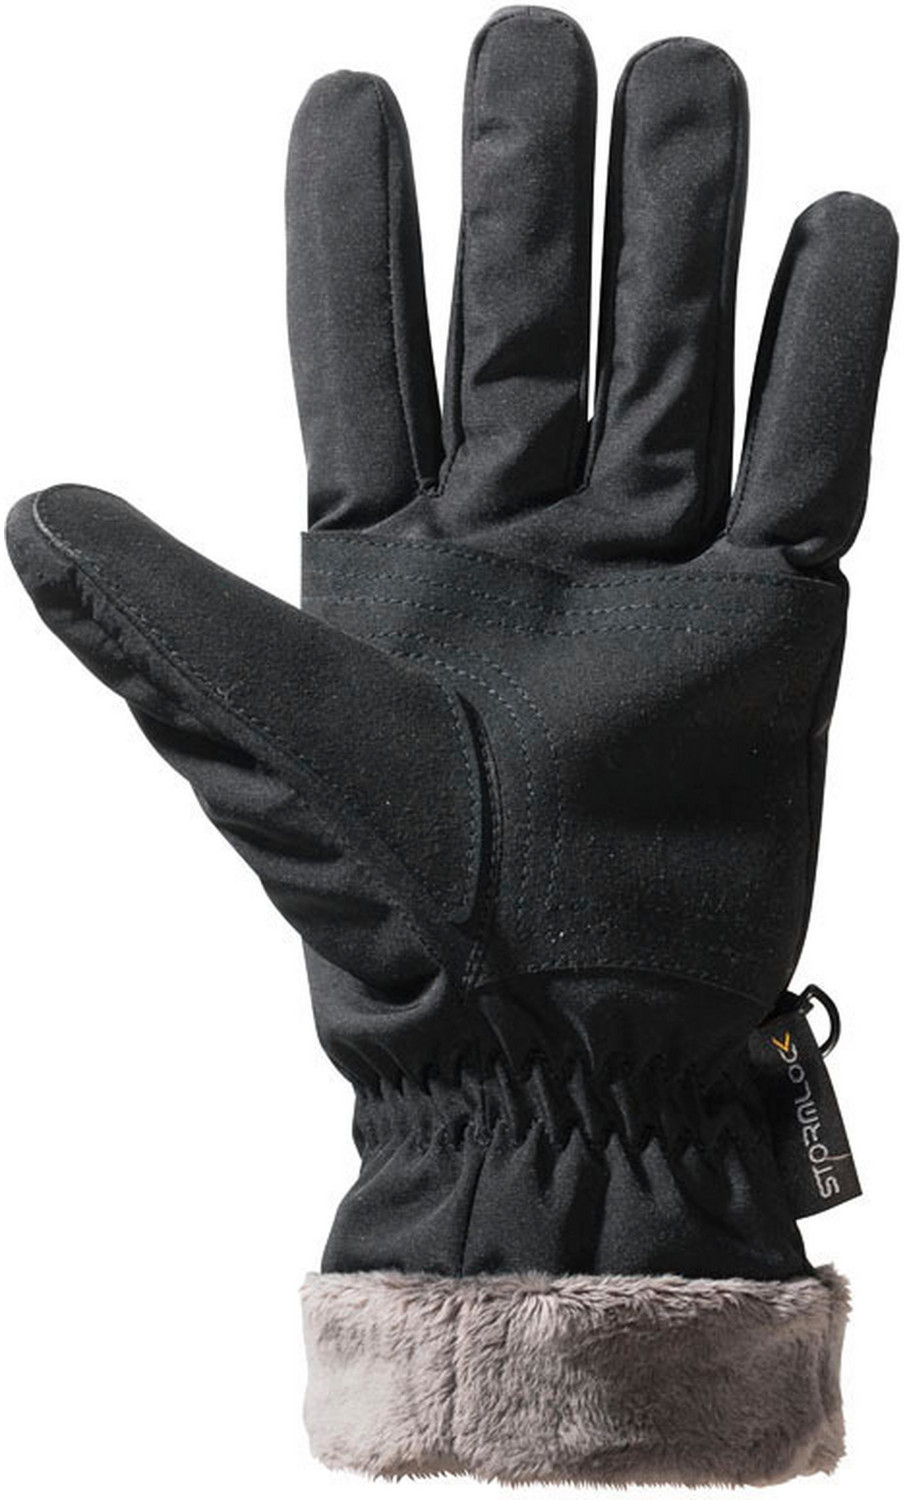 Jack Wolfskin Stormlock Highloft Glove Women black ab € 39,99 |  Preisvergleich bei